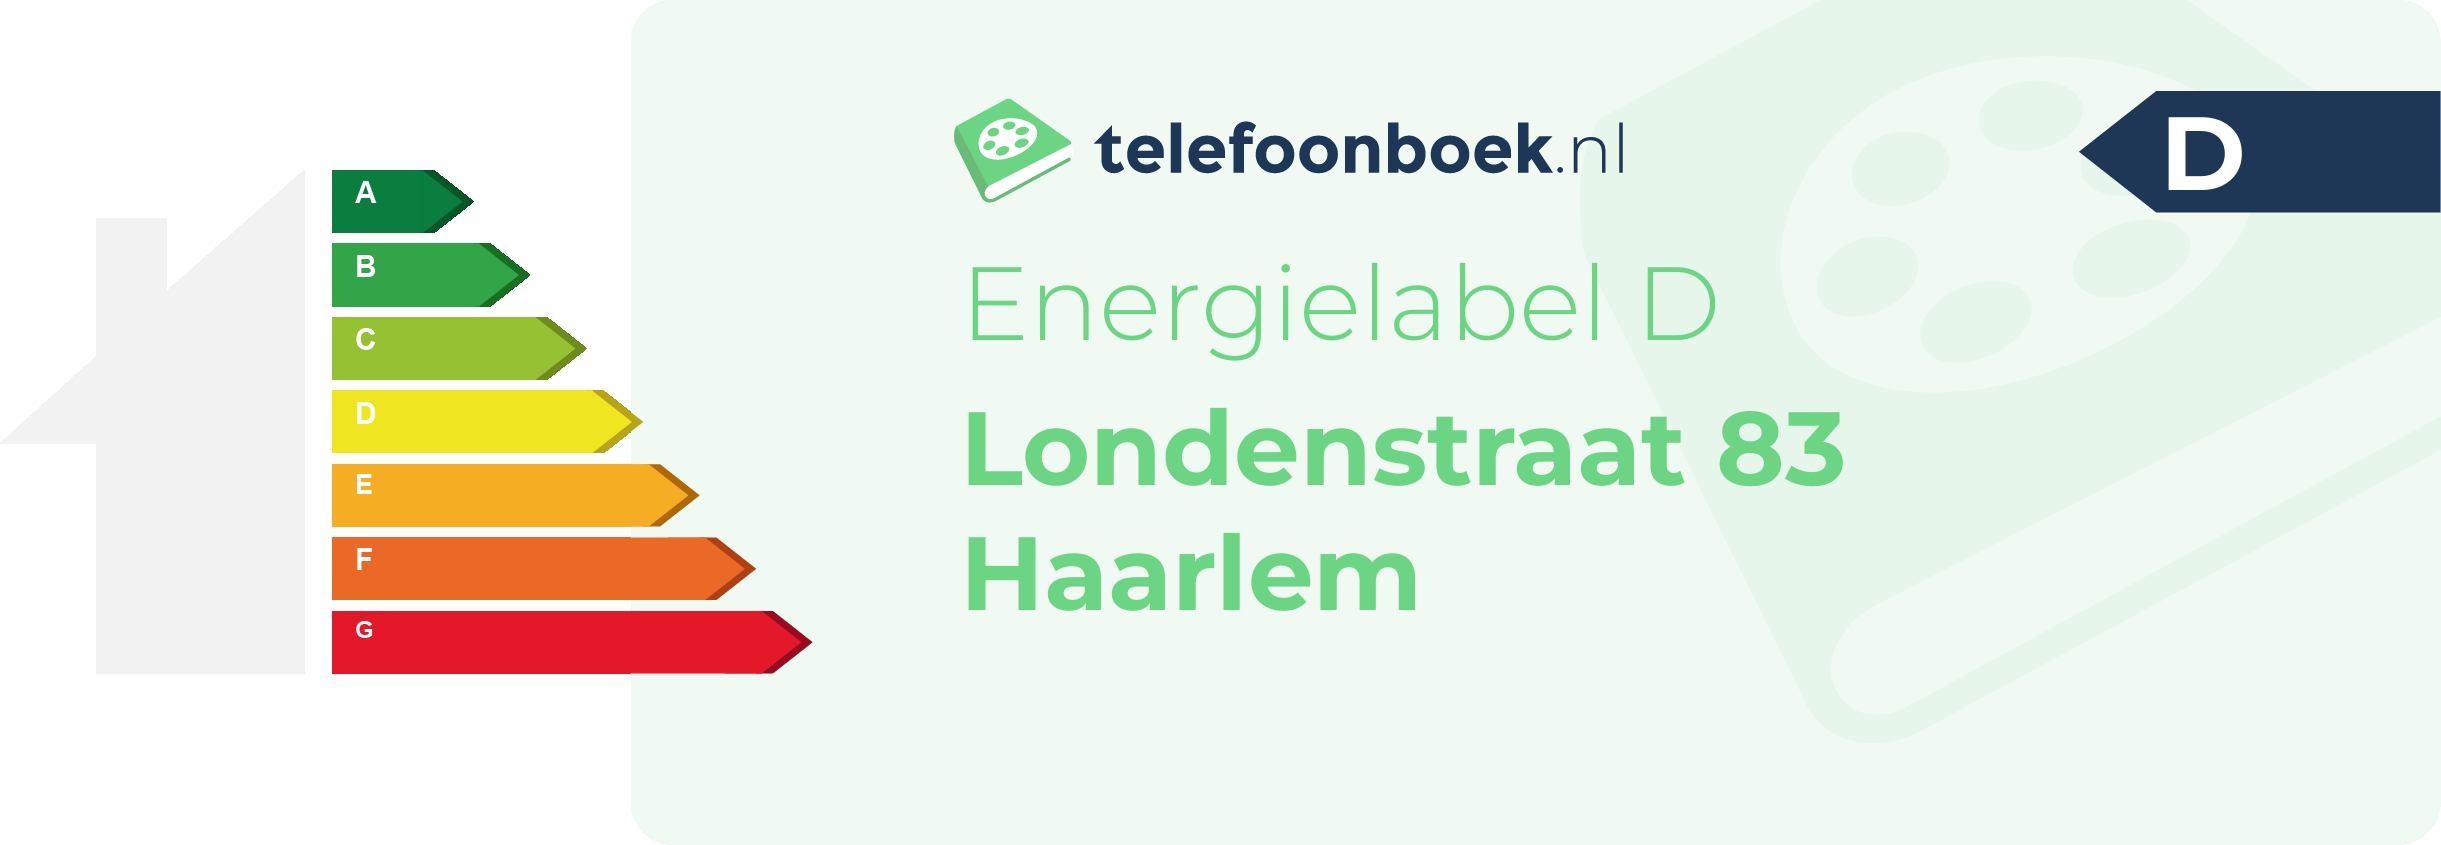 Energielabel Londenstraat 83 Haarlem